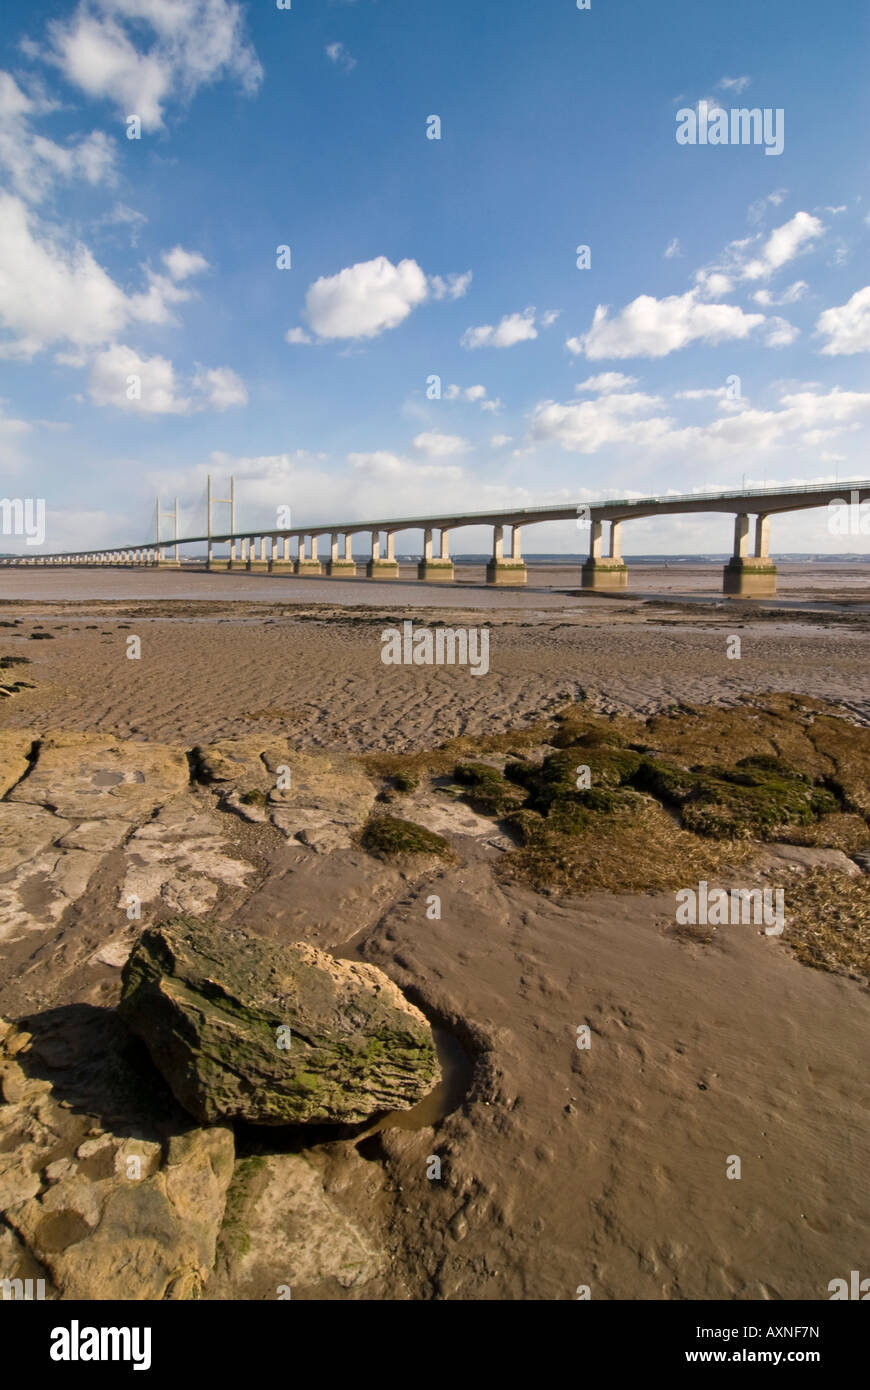 Verticale ampia angolazione del secondo ponte Severn [ail groesfan hafren] attraversando la Severn Estuary in una luminosa giornata di sole Foto Stock